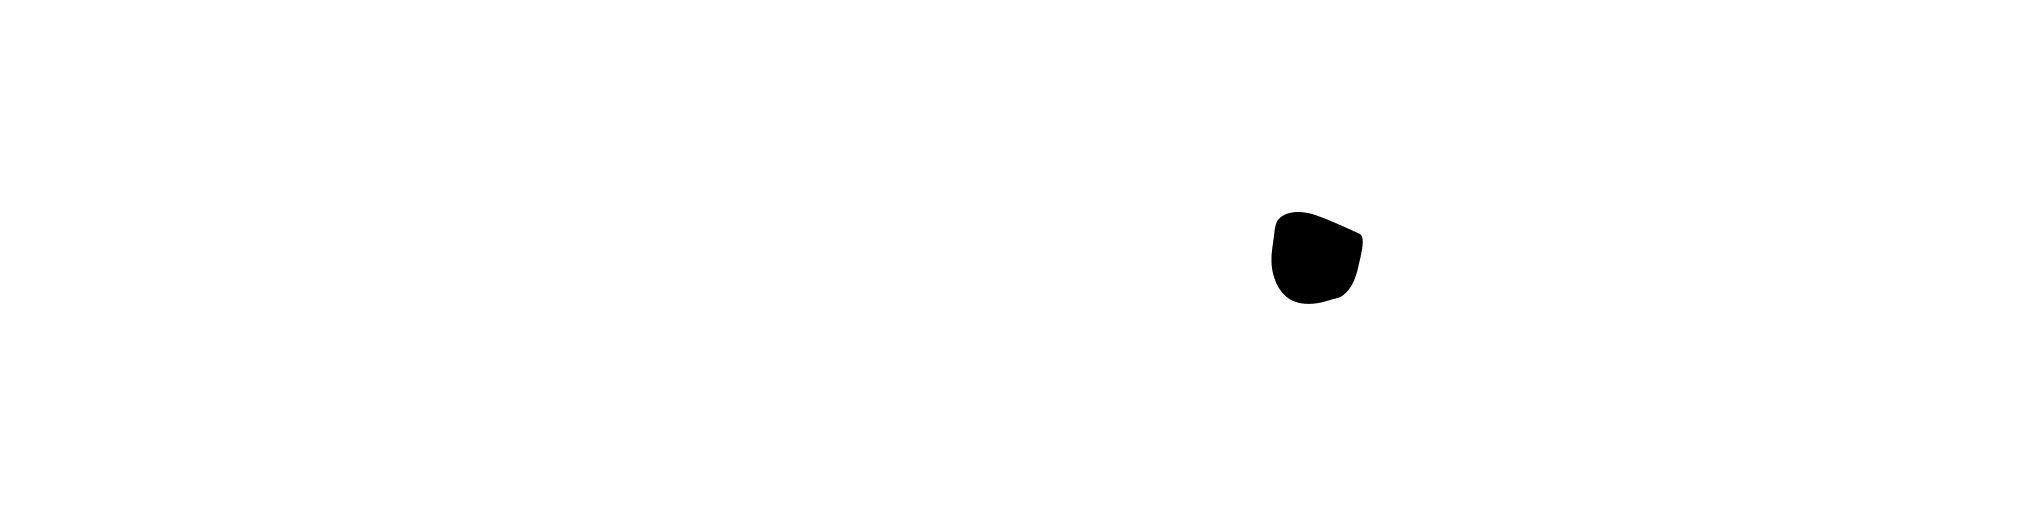 flera vita prickar i rad med en mörk som är unik